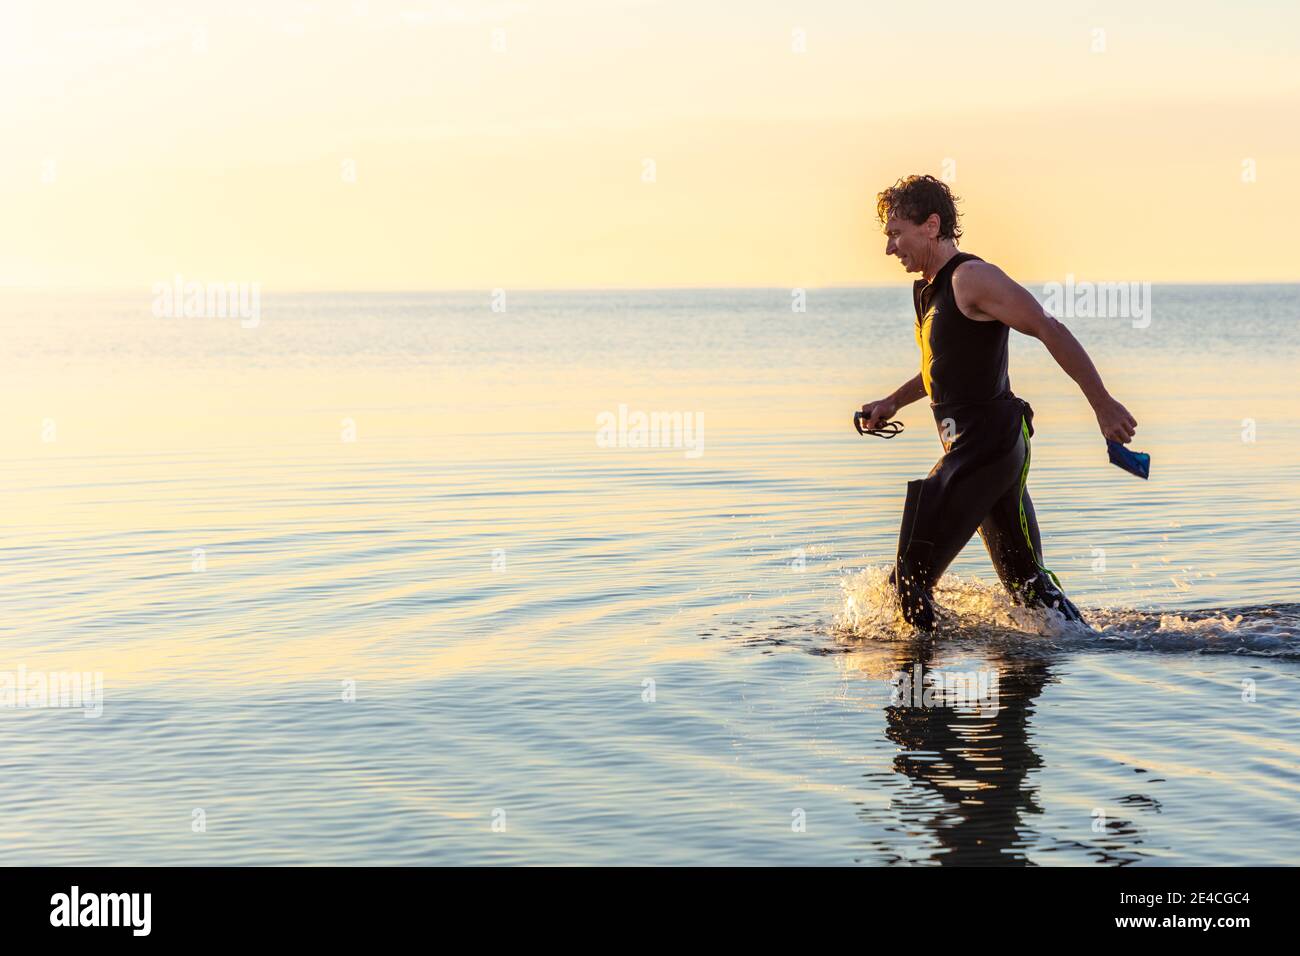 Homme 50 plus FIT, avec une combinaison dans la mer. Après l'entraînement de triathlon dans la matinée dans la mer Baltique Banque D'Images